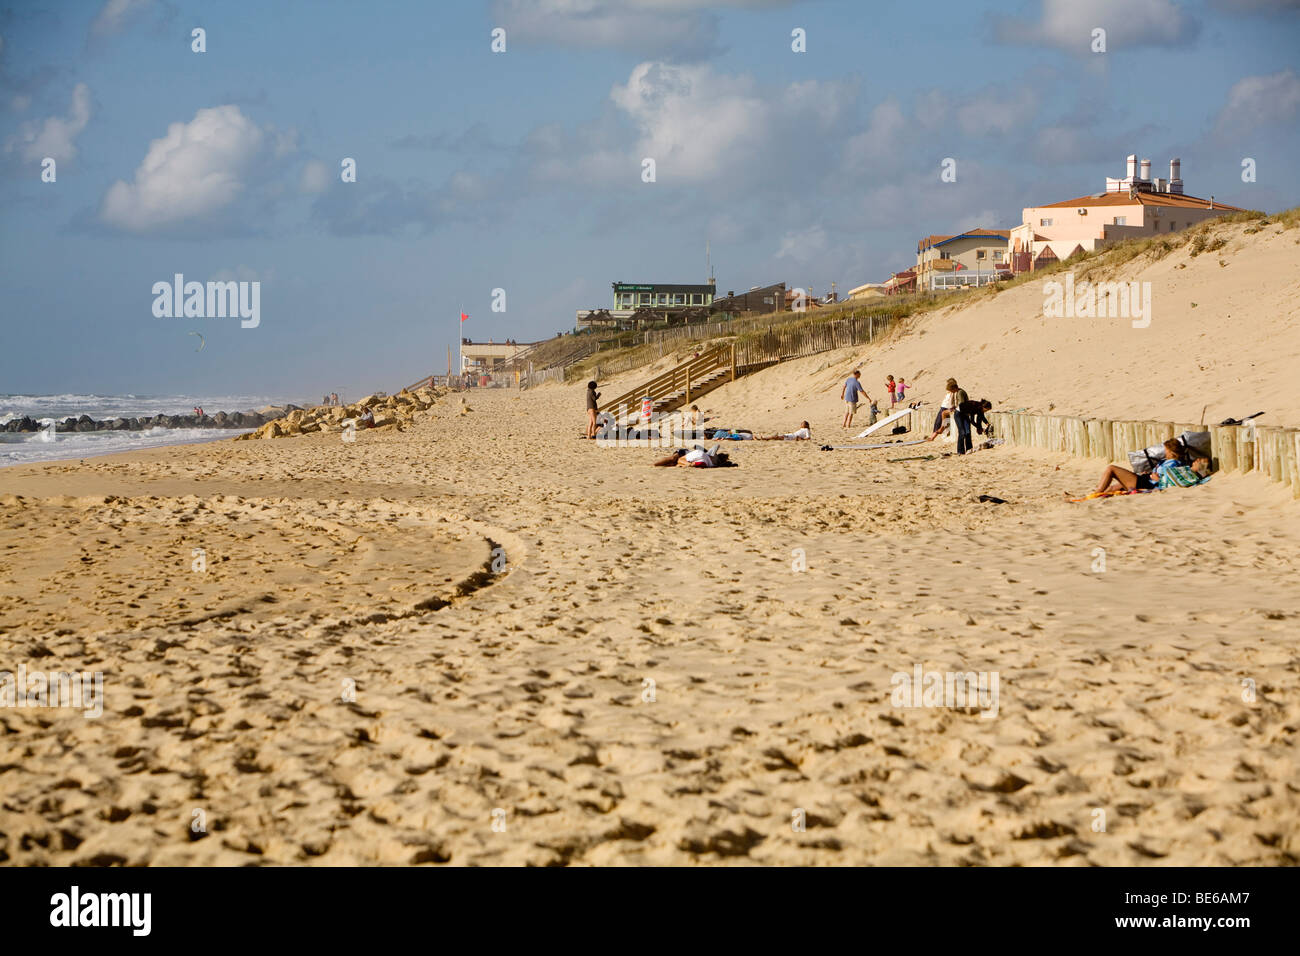 La playa en Lacanau ocean fuera de la temporada en el Atlántico sur, costa oeste de Francia, cerca de Bordeaux Foto de stock